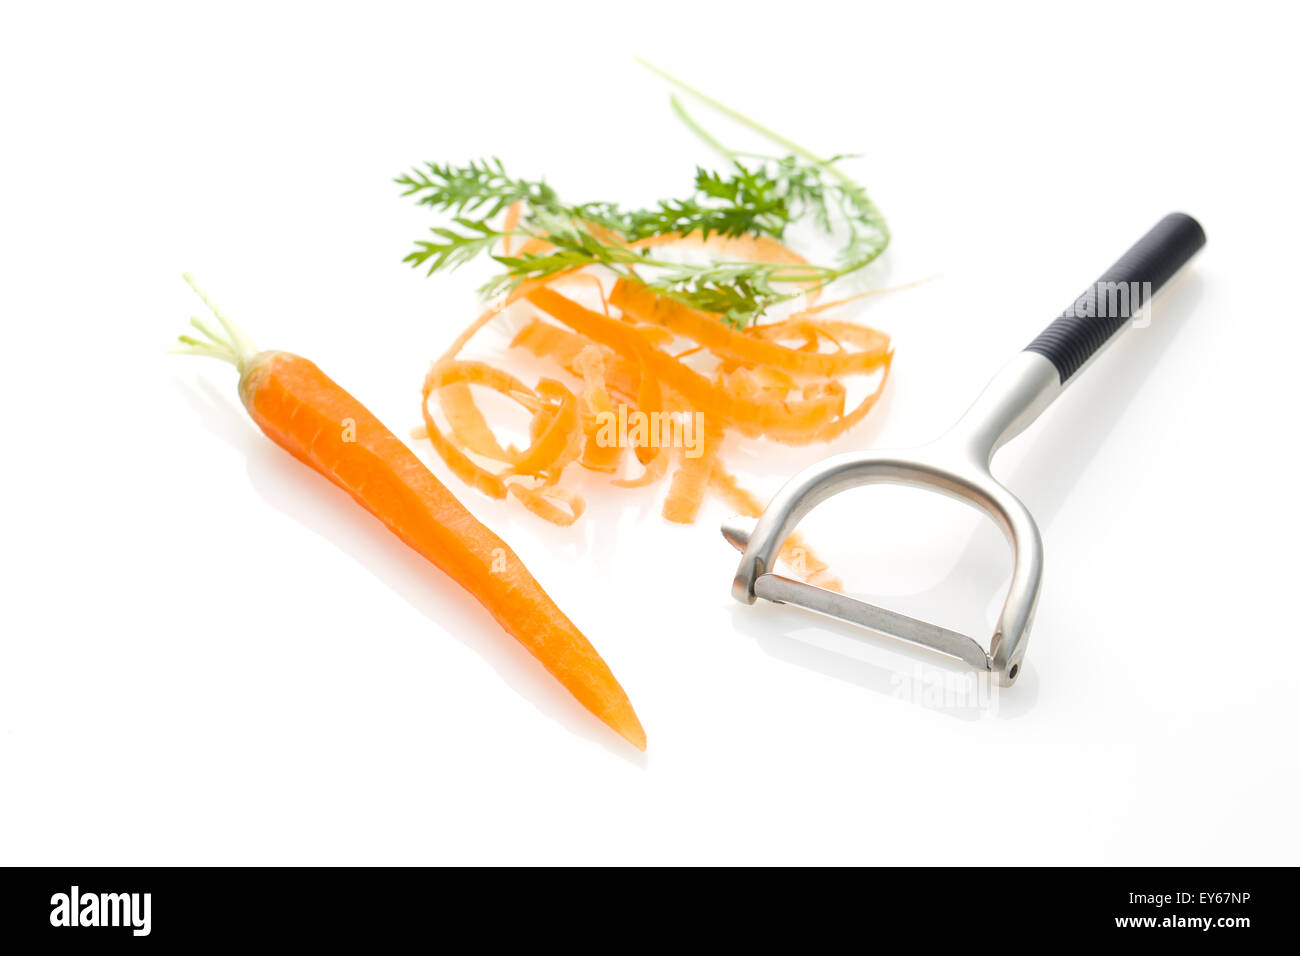 Die Karotten schälen Stockfotografie - Alamy